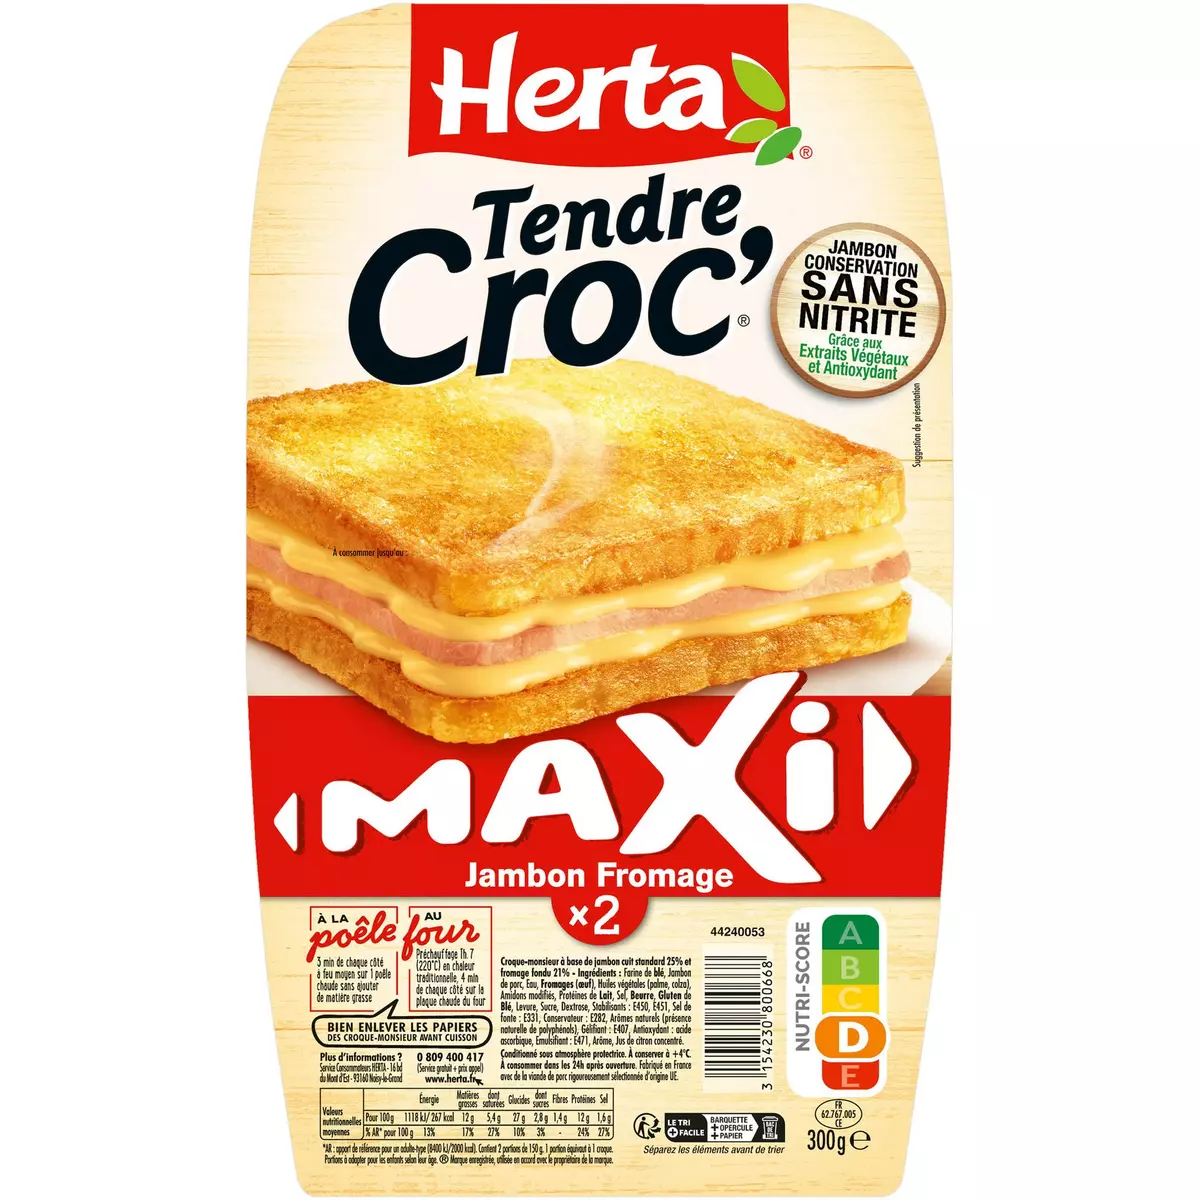 HERTA Tendre Croc' maxi jambon et fromage sans nitrite 2 pièces 300g